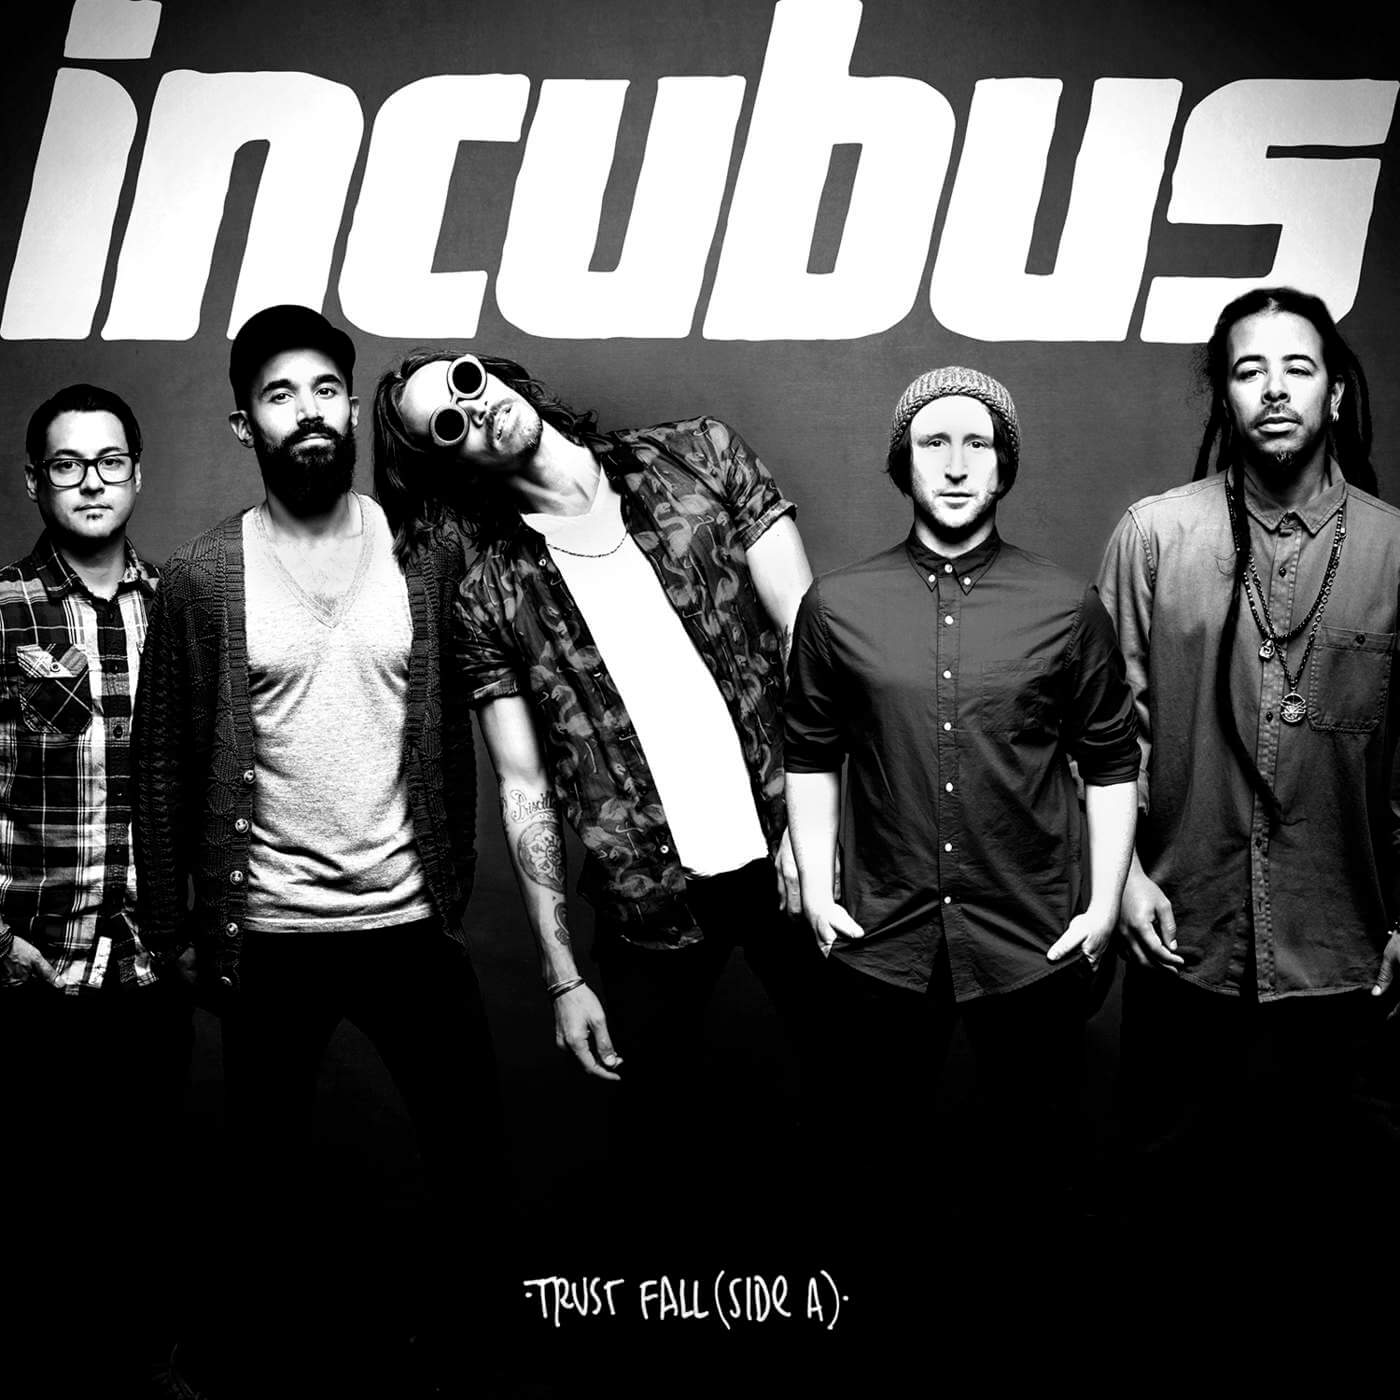 Cover album Incubus ‘Trust Fall (Side A)”, bulan April 2020 nanti Incubus bakal merilis album Trust Fall yang kedua bertajuk “Trust Fall (Side B)”